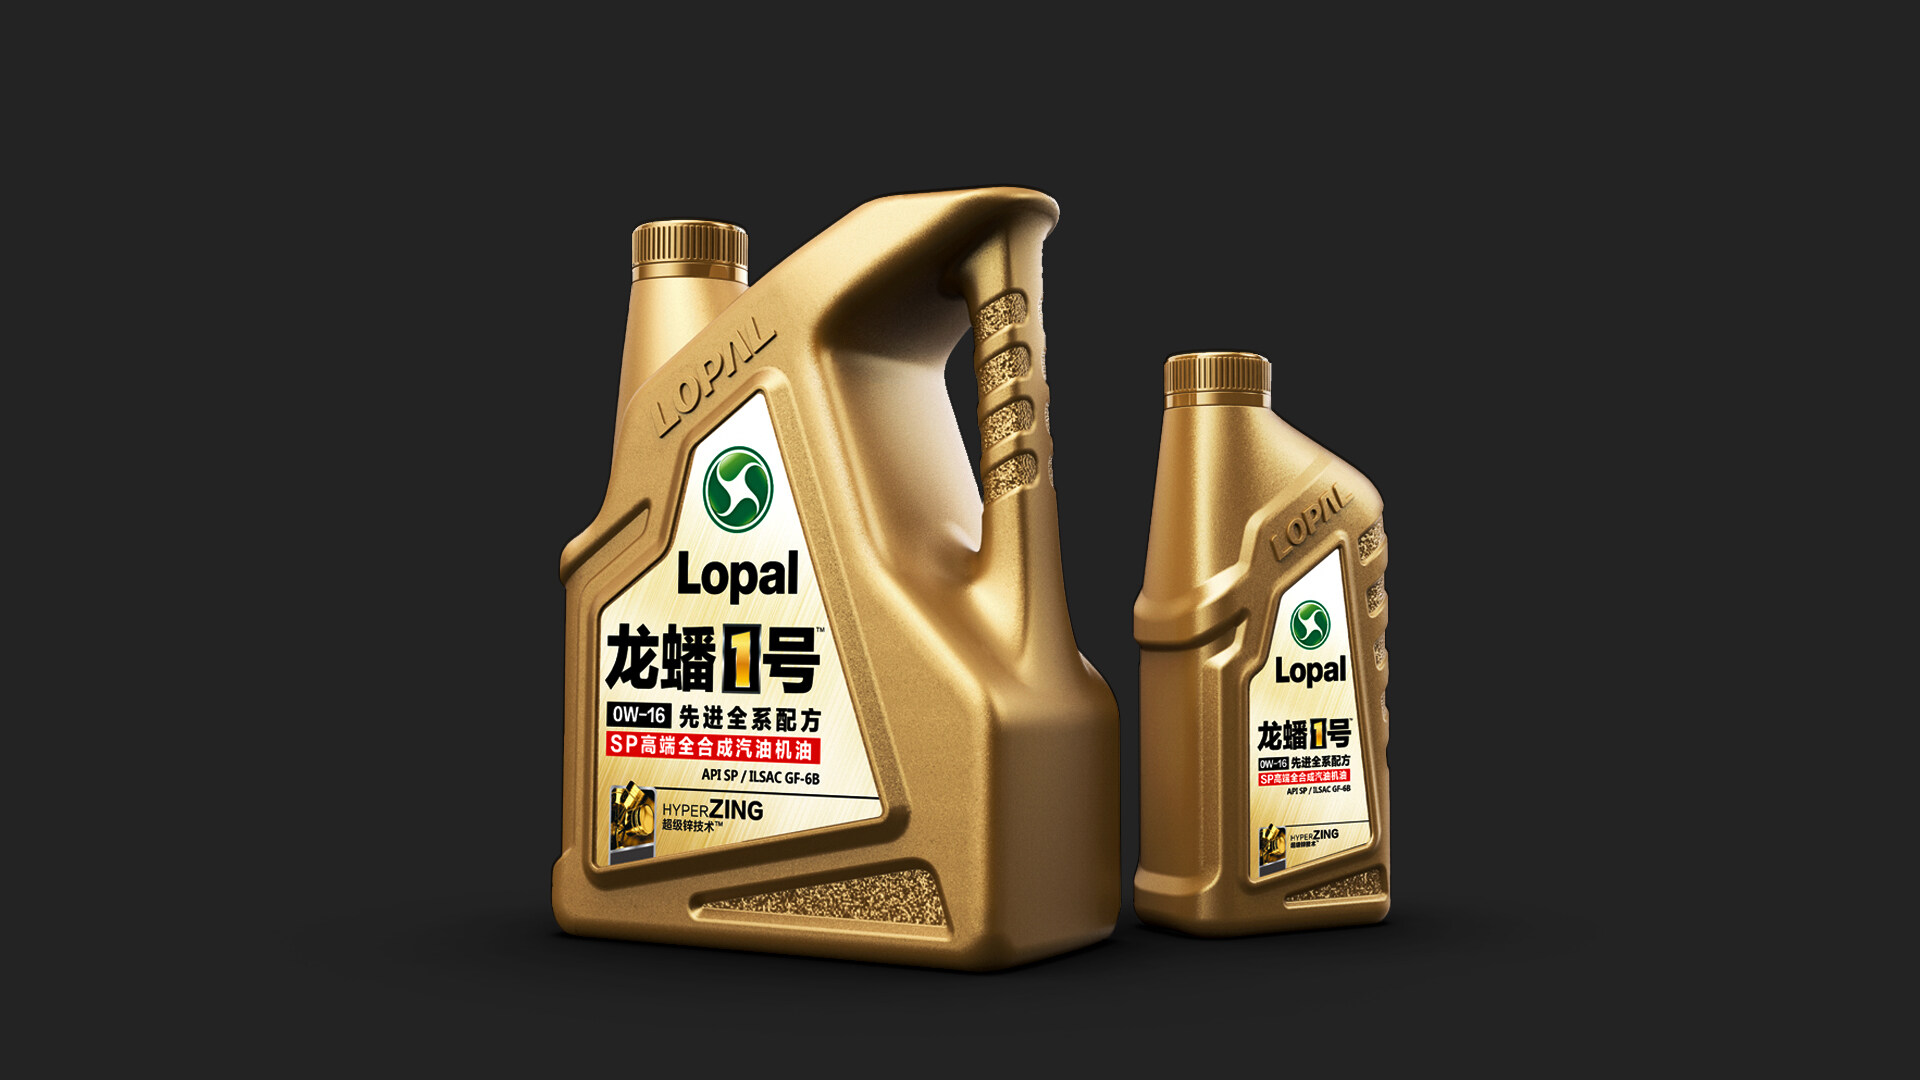 润滑油包装瓶型设计-龙蟠1号高端全合成润滑油/瓶型设计